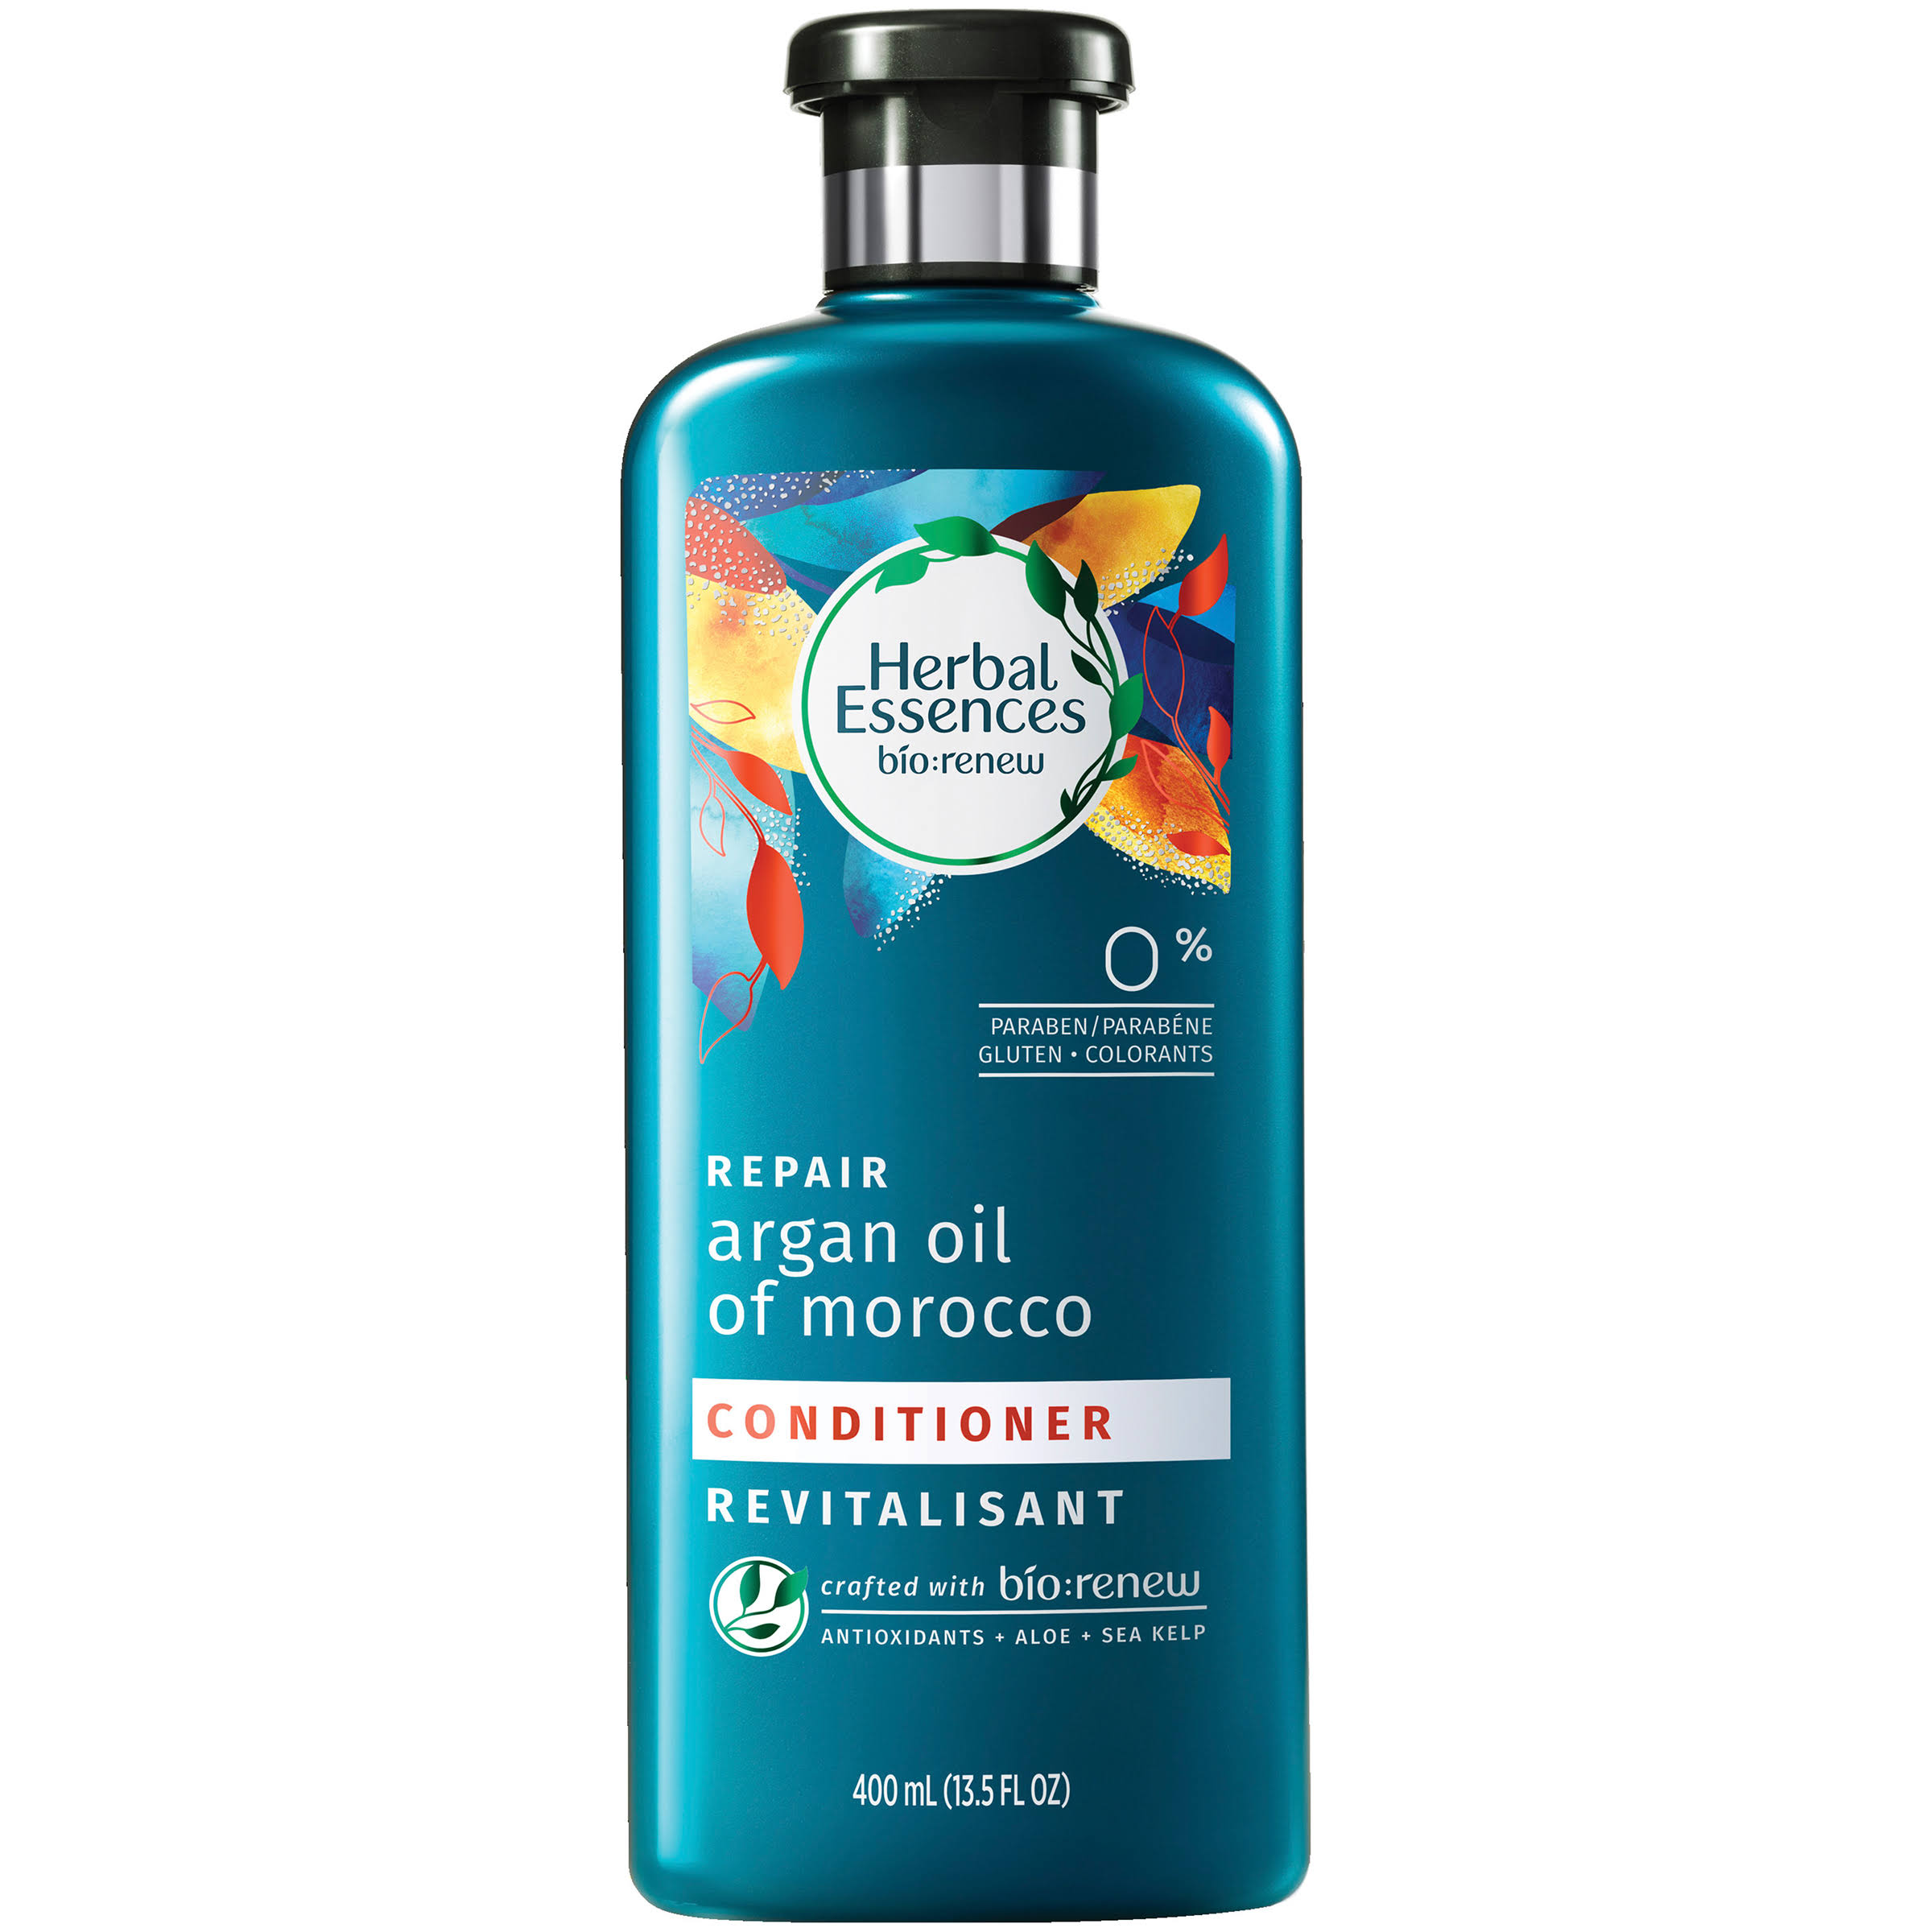 Herbal Essences Argan Oil of Morocco Conditioner - 13.5oz